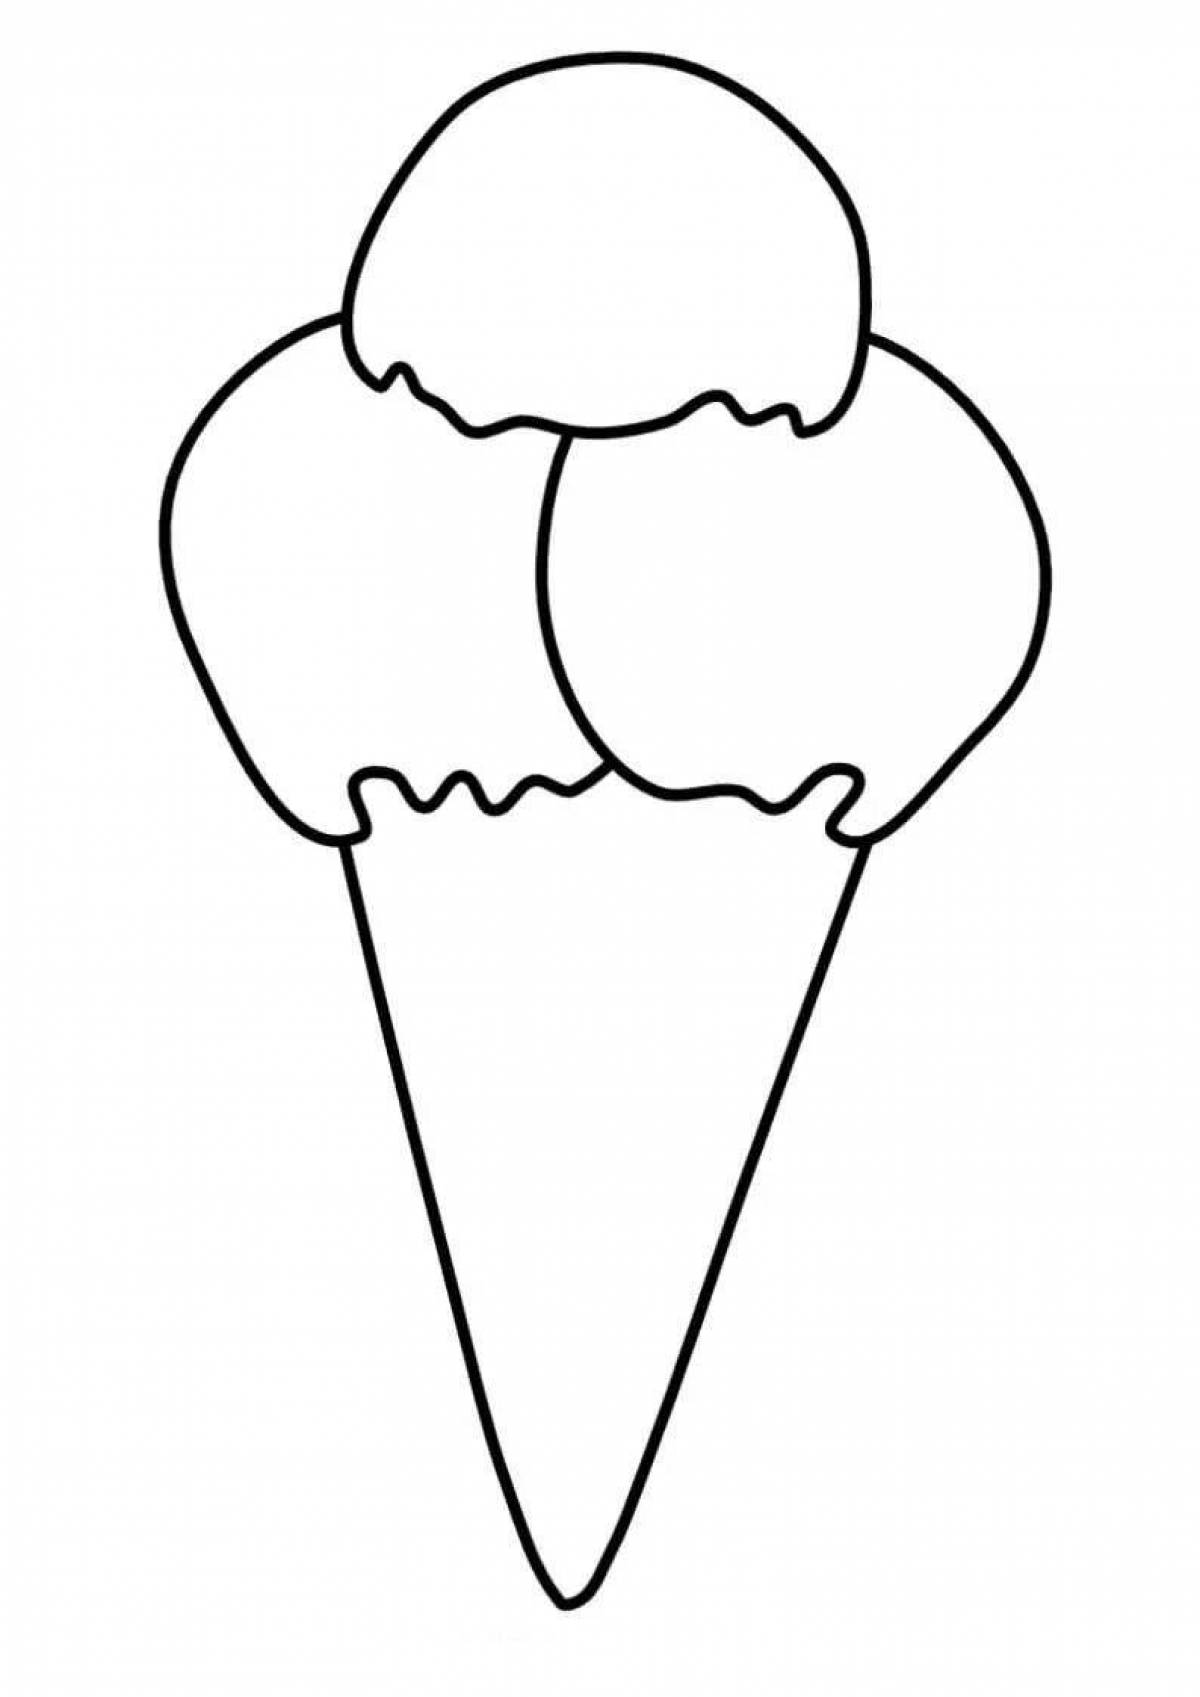 Великолепная раскраска мороженого для детей